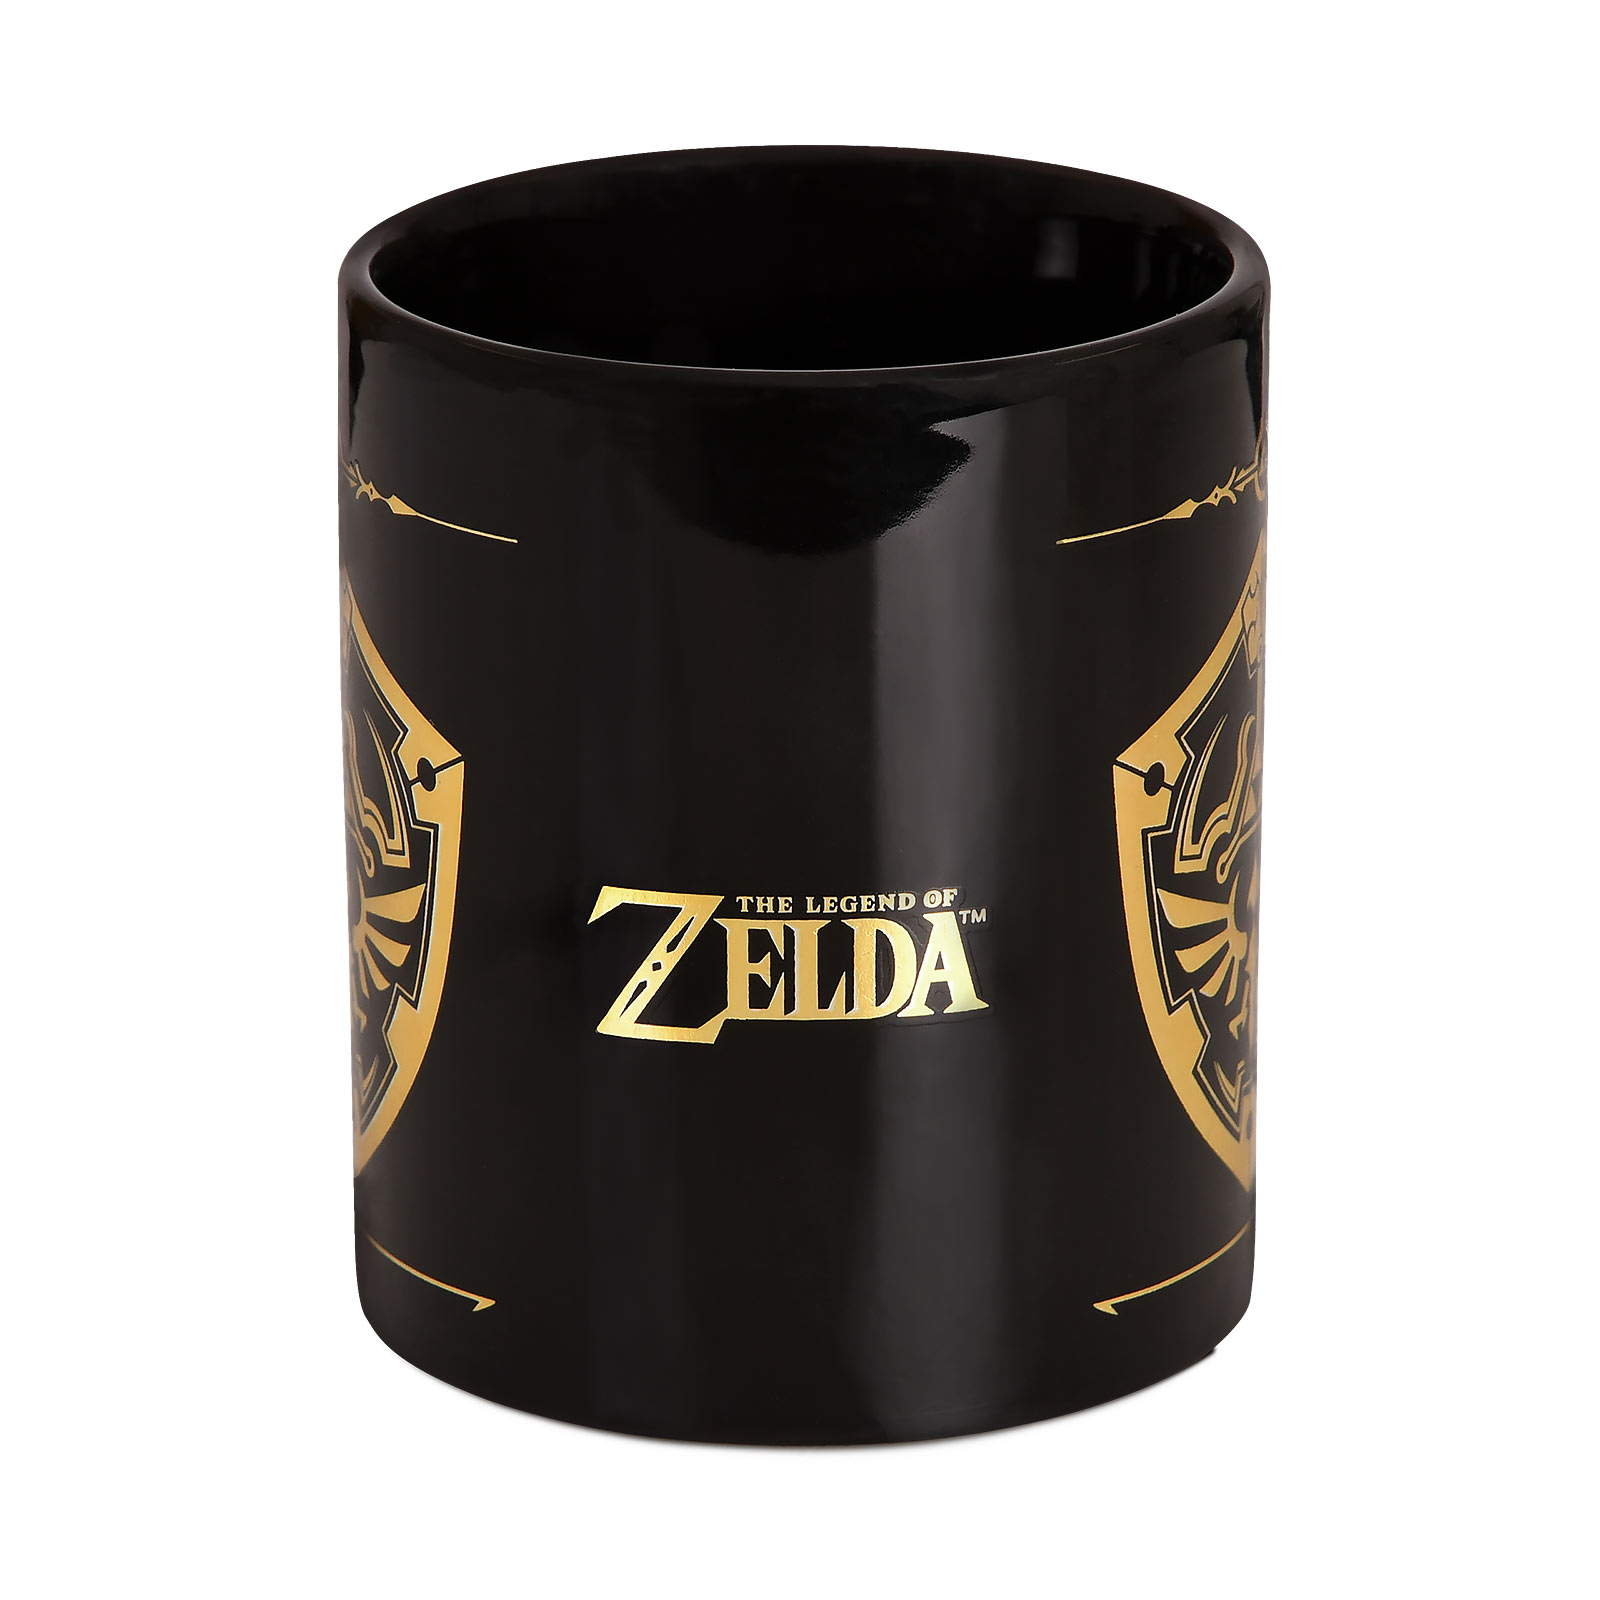 Zelda - Hylia Shield Mug